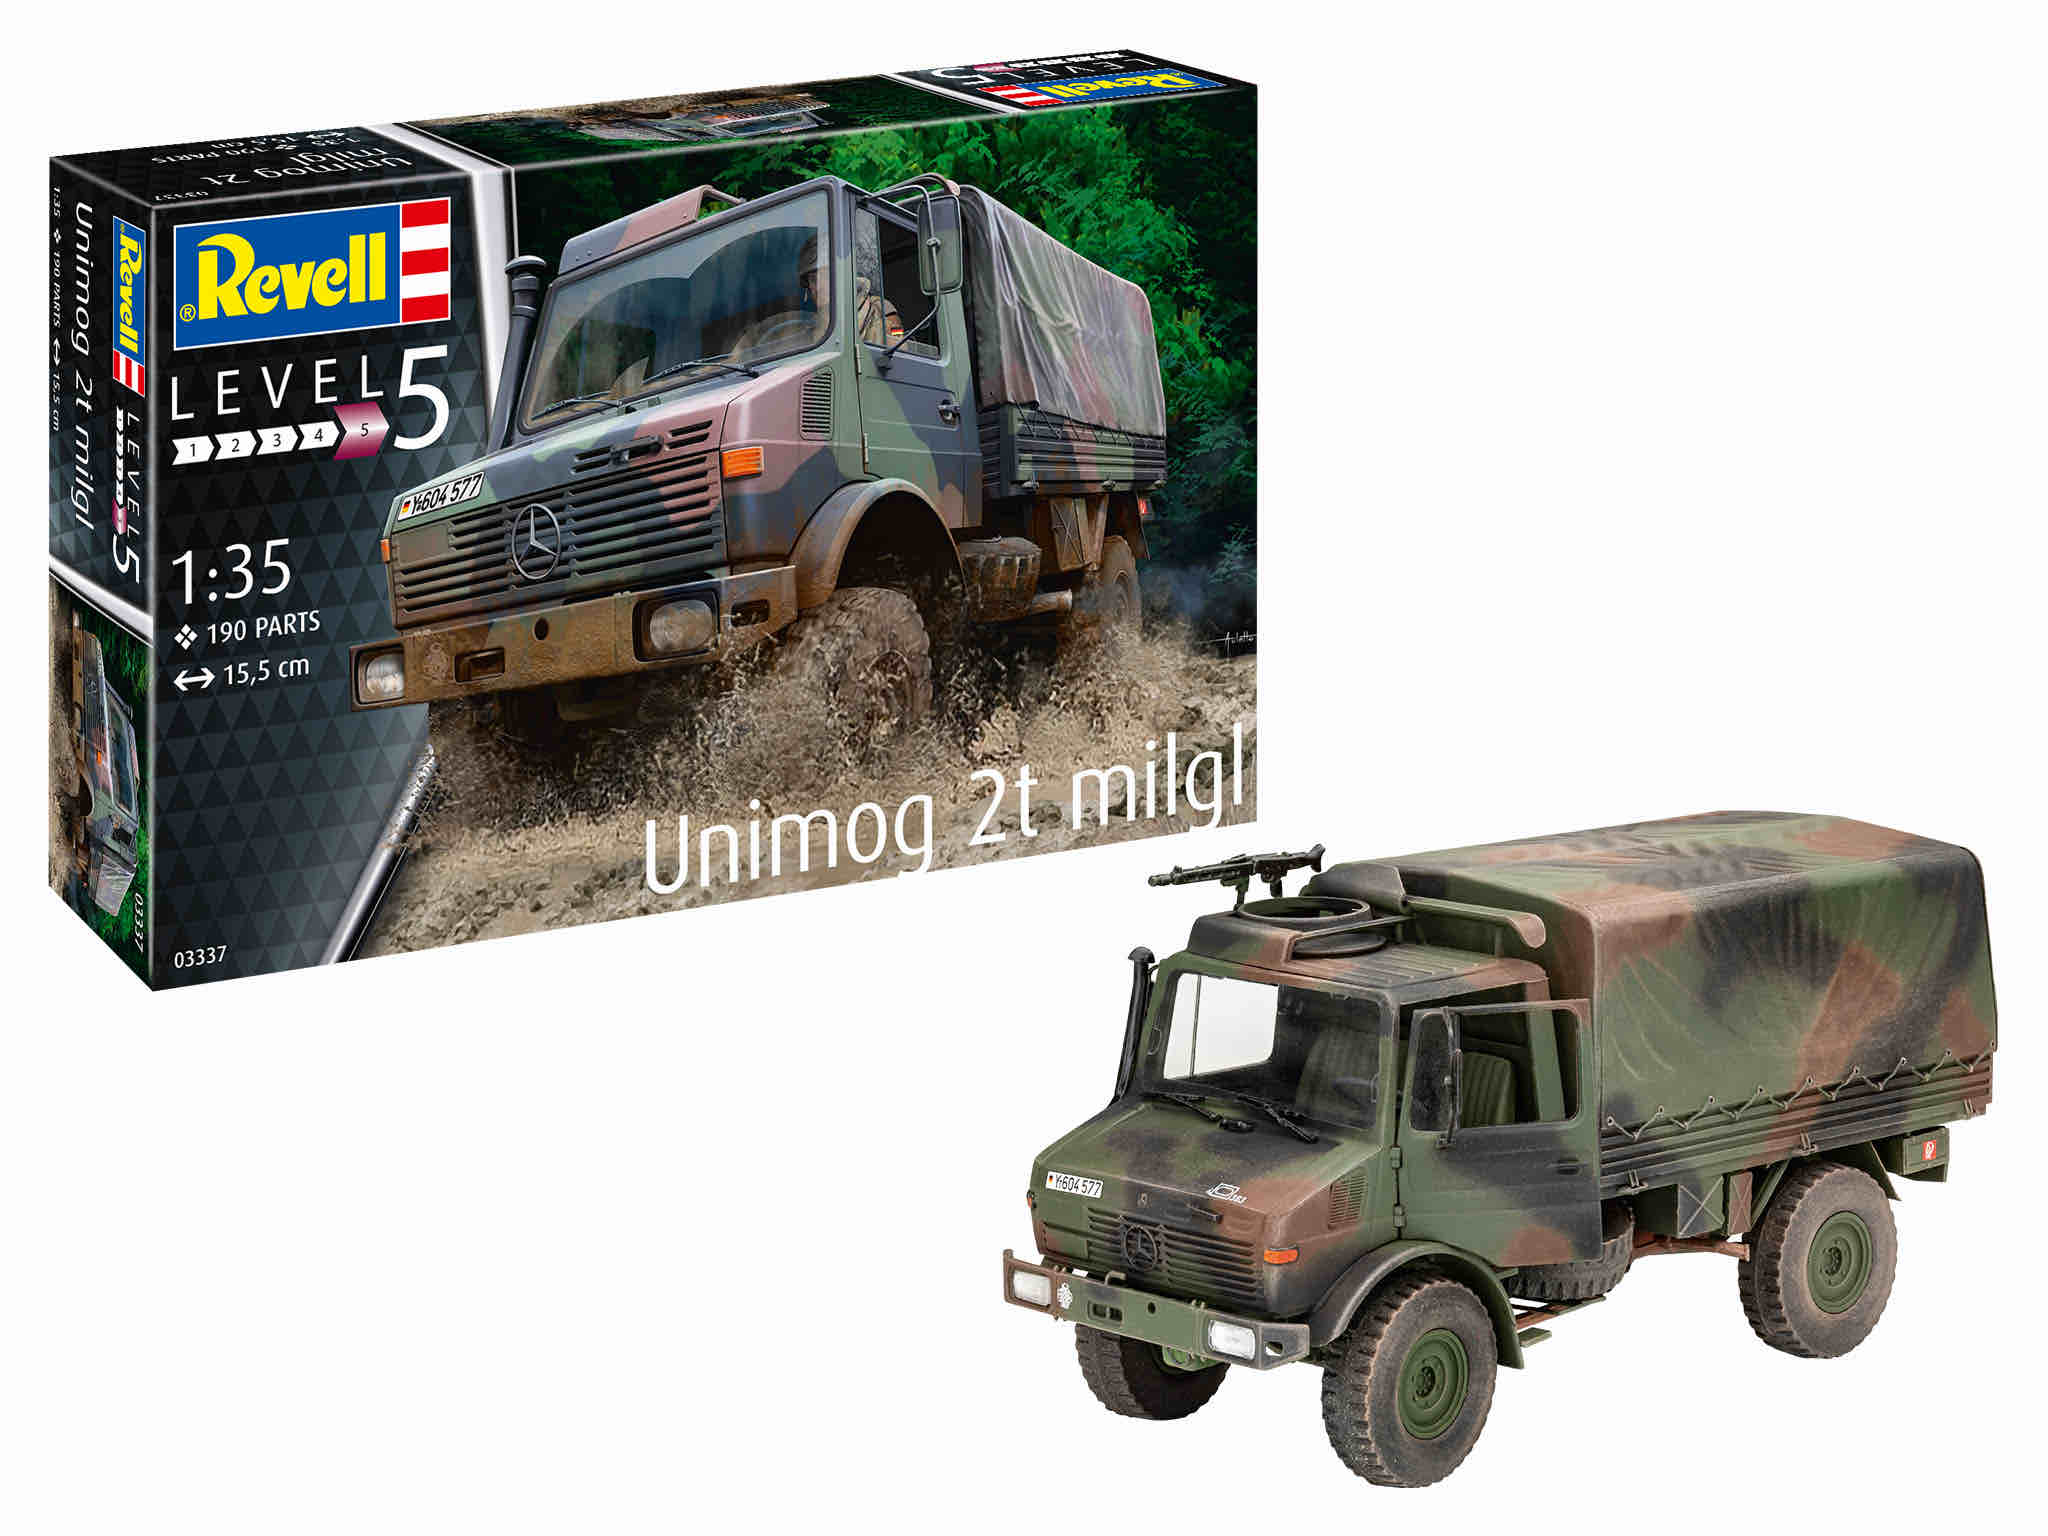 Revell Unimog 2T milgl in 1:35 bouwpakket